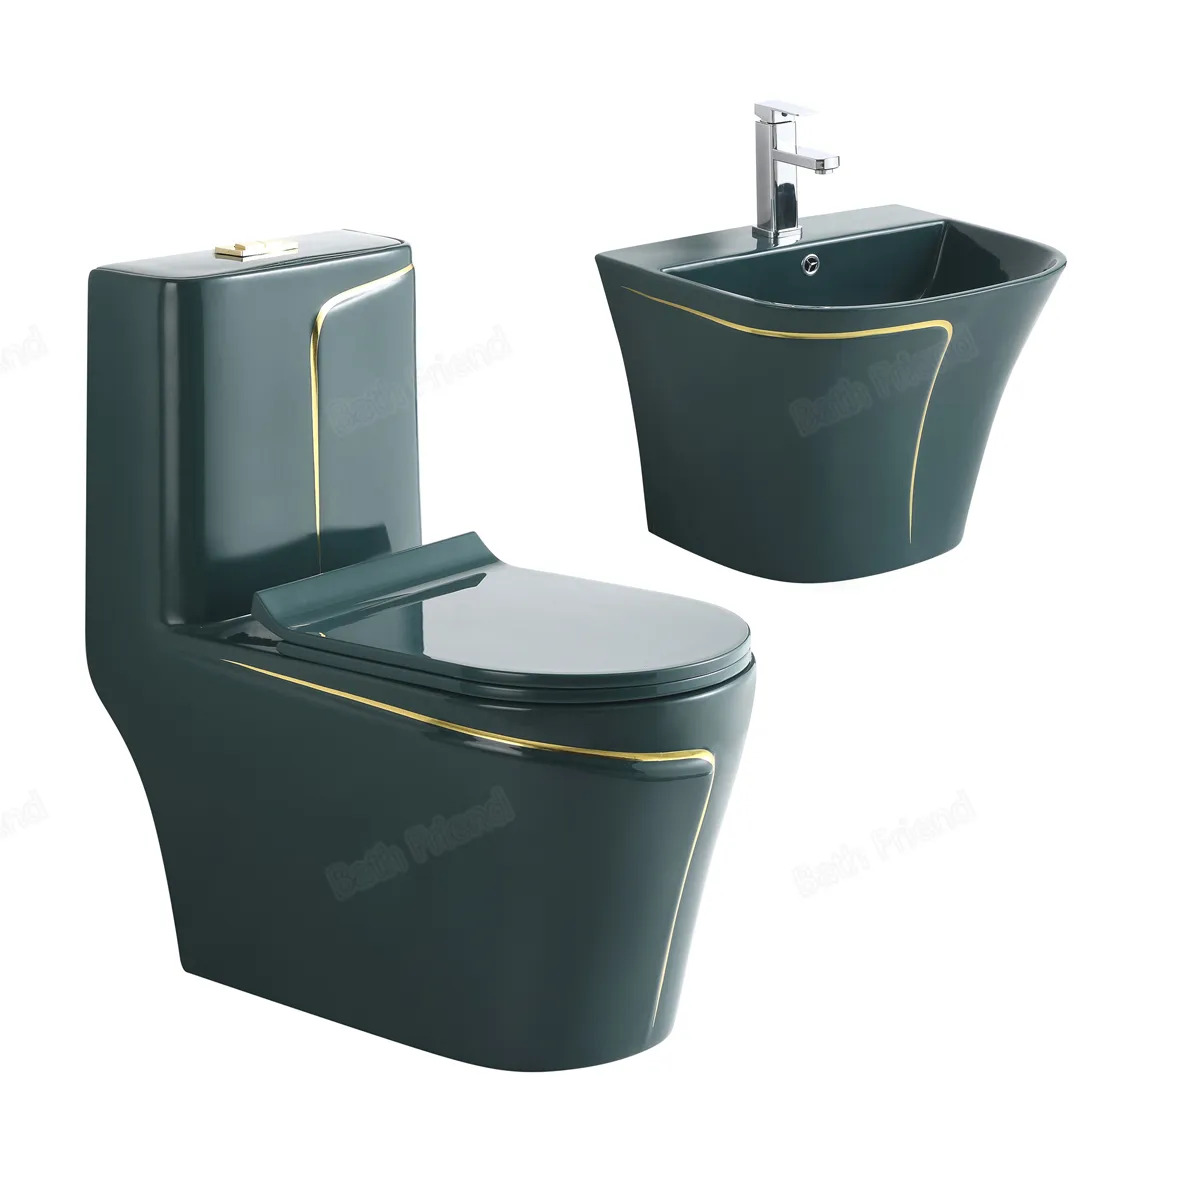 Wc cerâmico banheiro lavatório de parede com vaso sanitário cerâmico ouro verde acoplado vaso sanitário